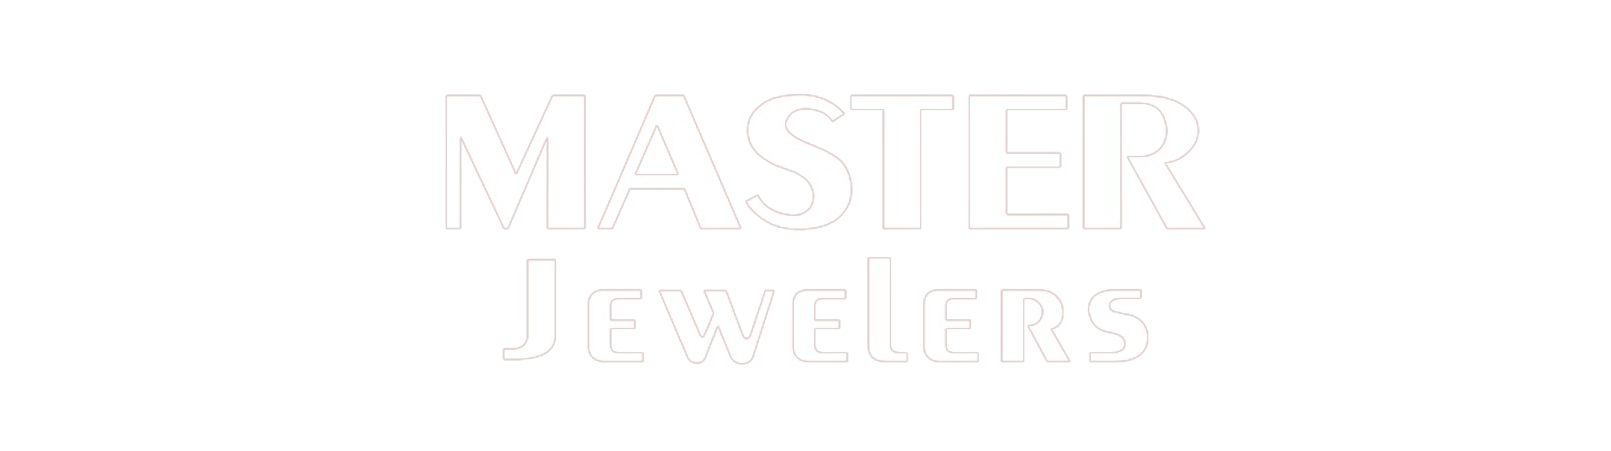 Master Jewelers – Fine Jewelry